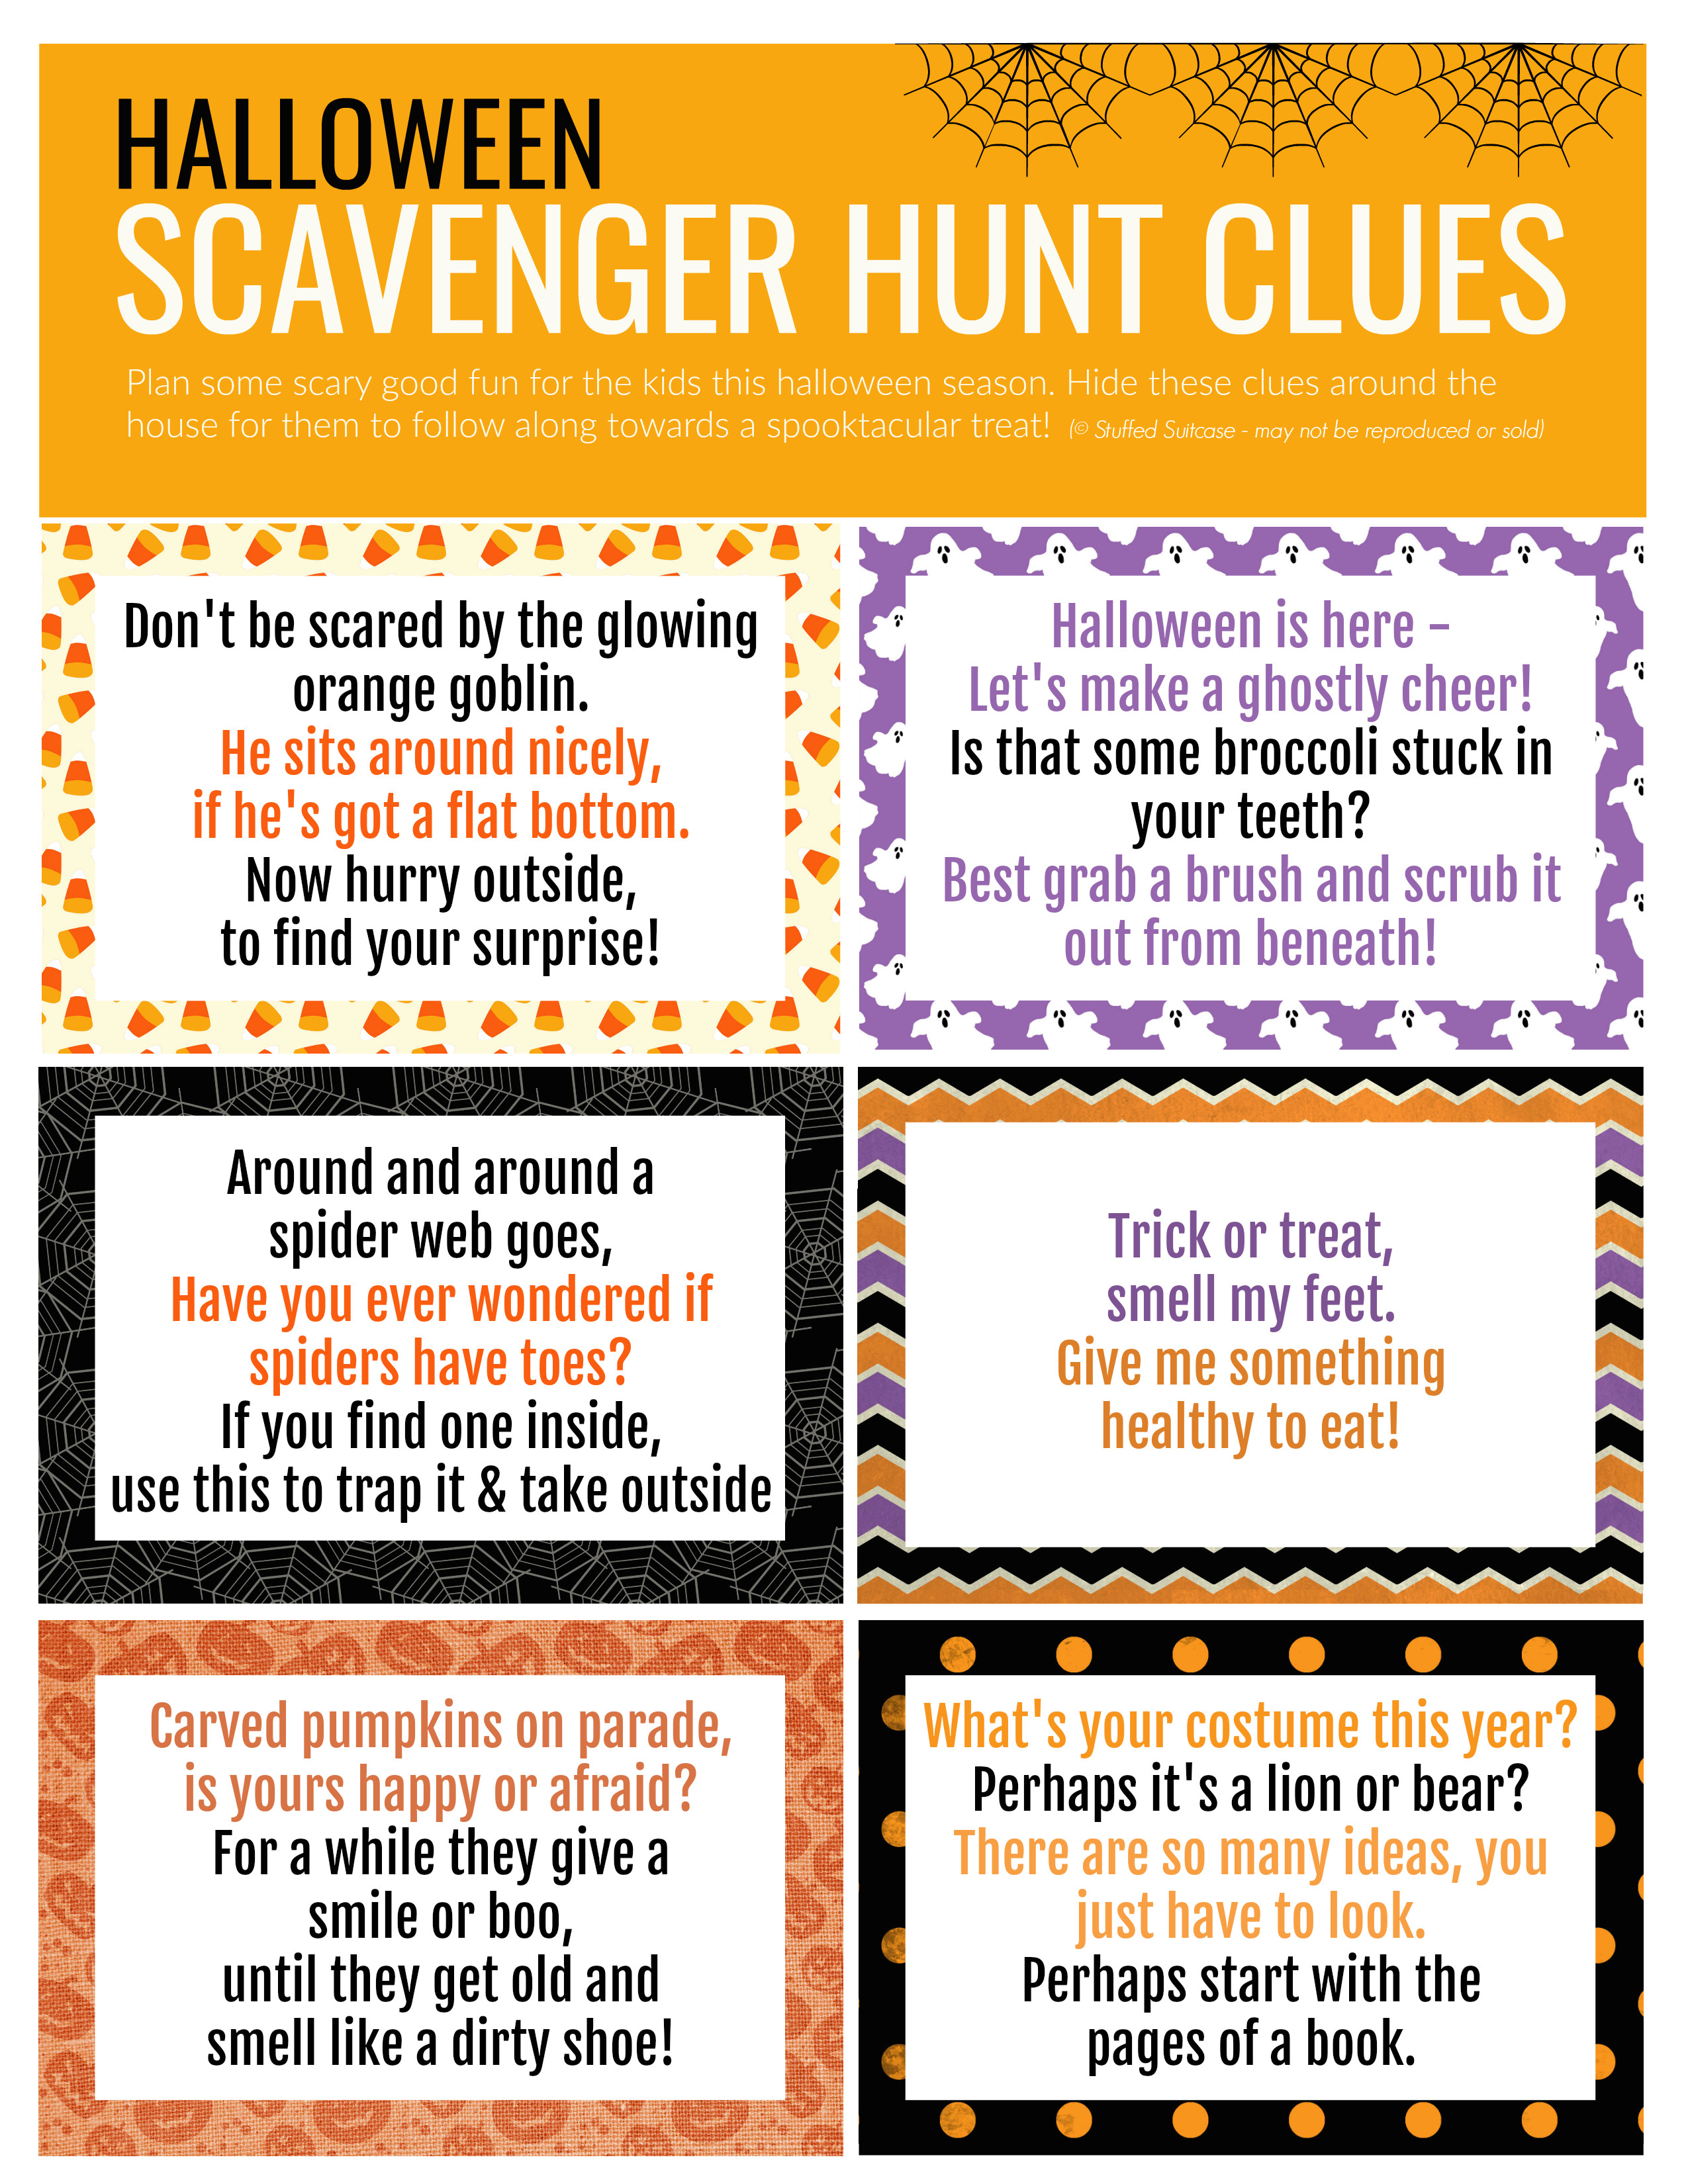 Indoor Halloween Scavenger Hunt Clues
 Halloween Scavenger Hunt How to Plan a Surprise for Your